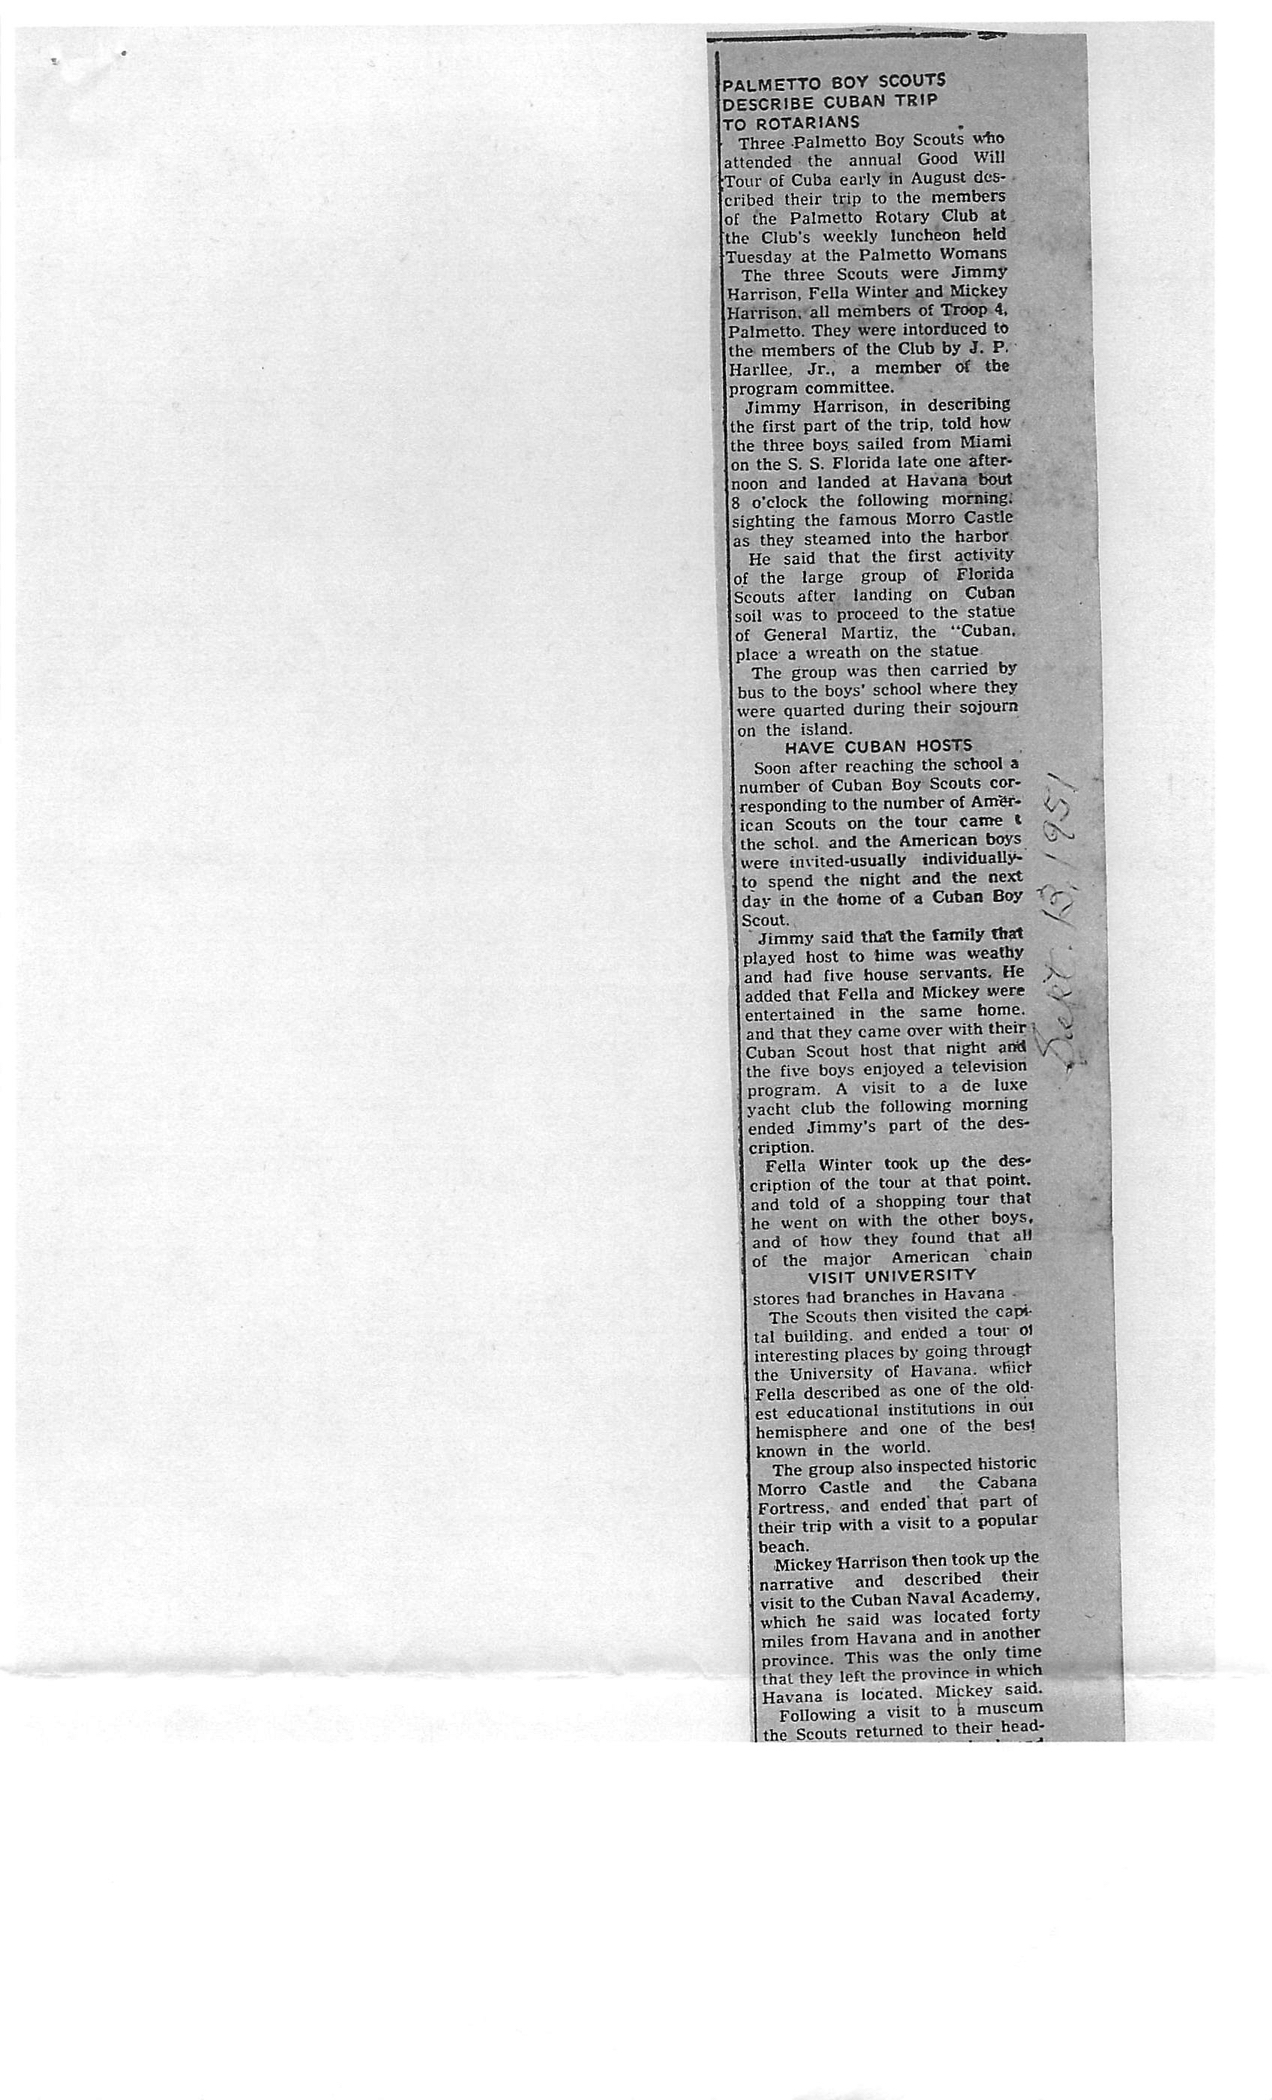 Bradenton Herald 08-06-1951 - page 2